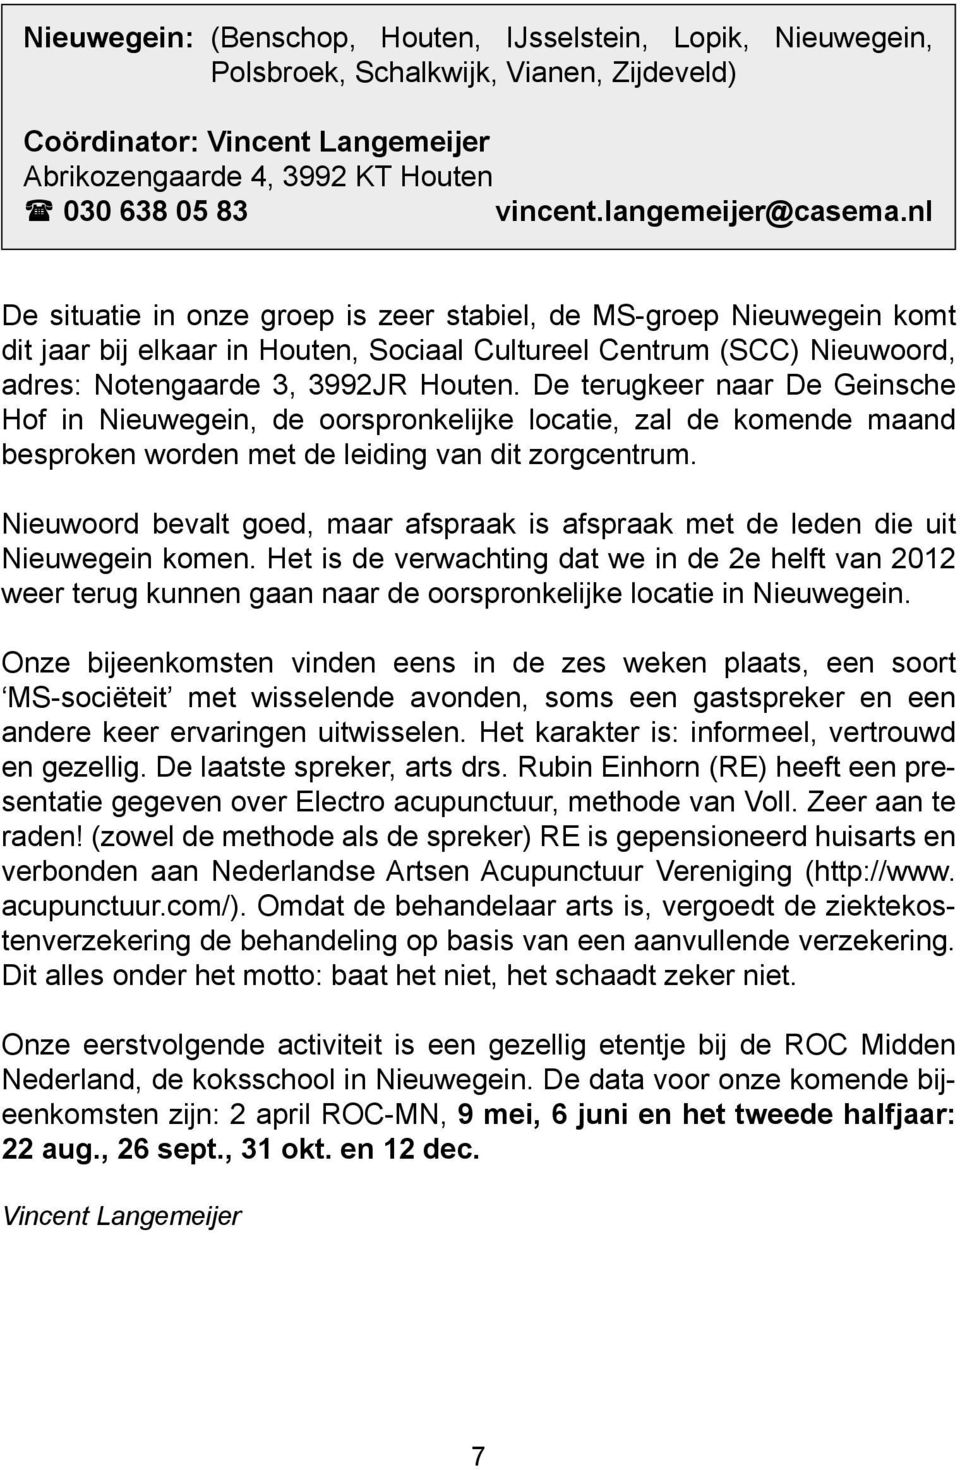 nl De situatie in onze groep is zeer stabiel, de MS-groep Nieuwegein komt dit jaar bij elkaar in Houten, Sociaal Cultureel Centrum (SCC) Nieuwoord, adres: Notengaarde 3, 3992JR Houten.